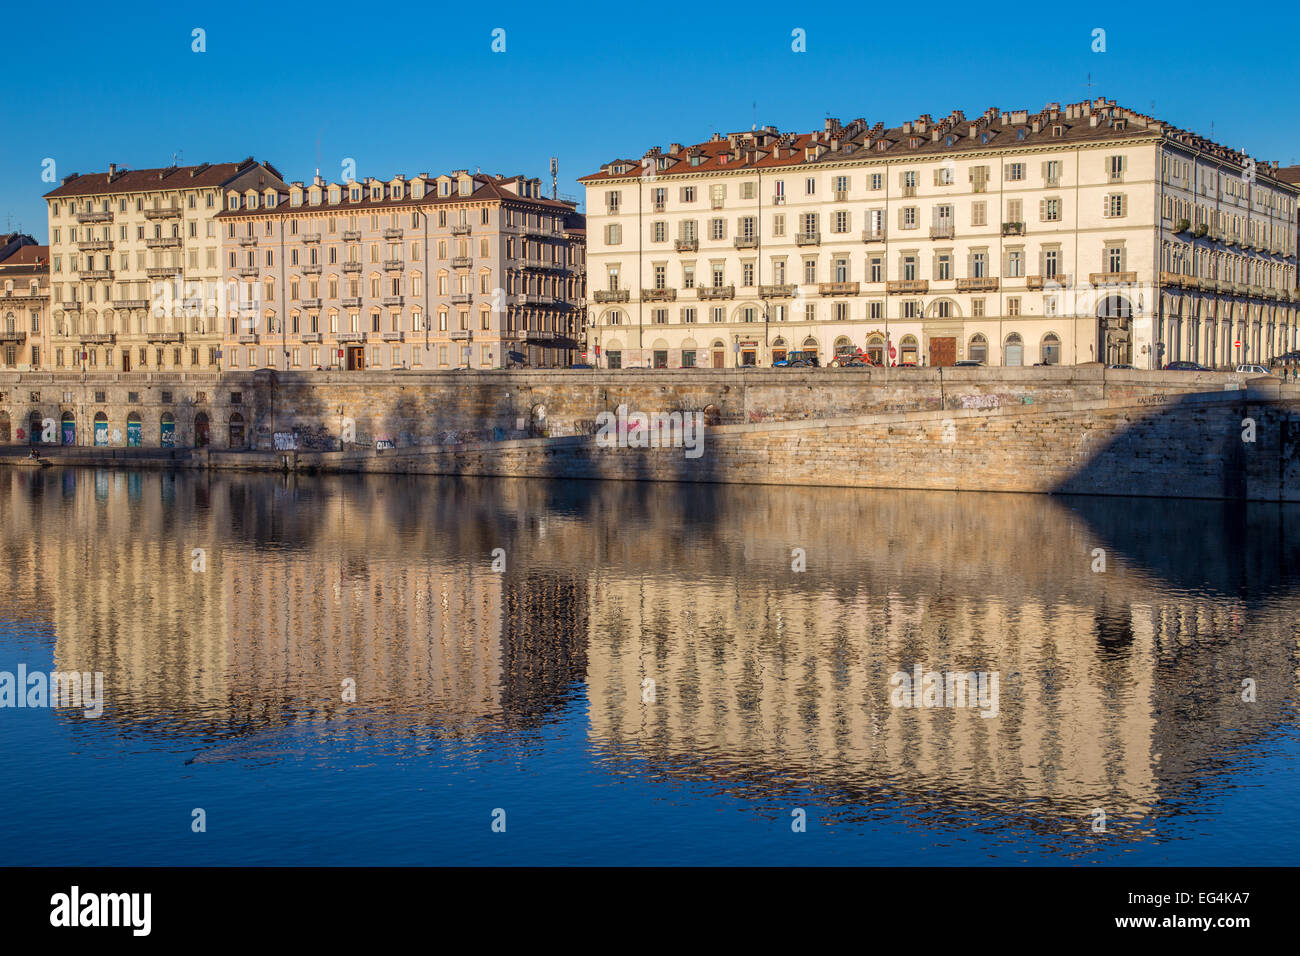 River Po in Turin, Italy Stock Photo